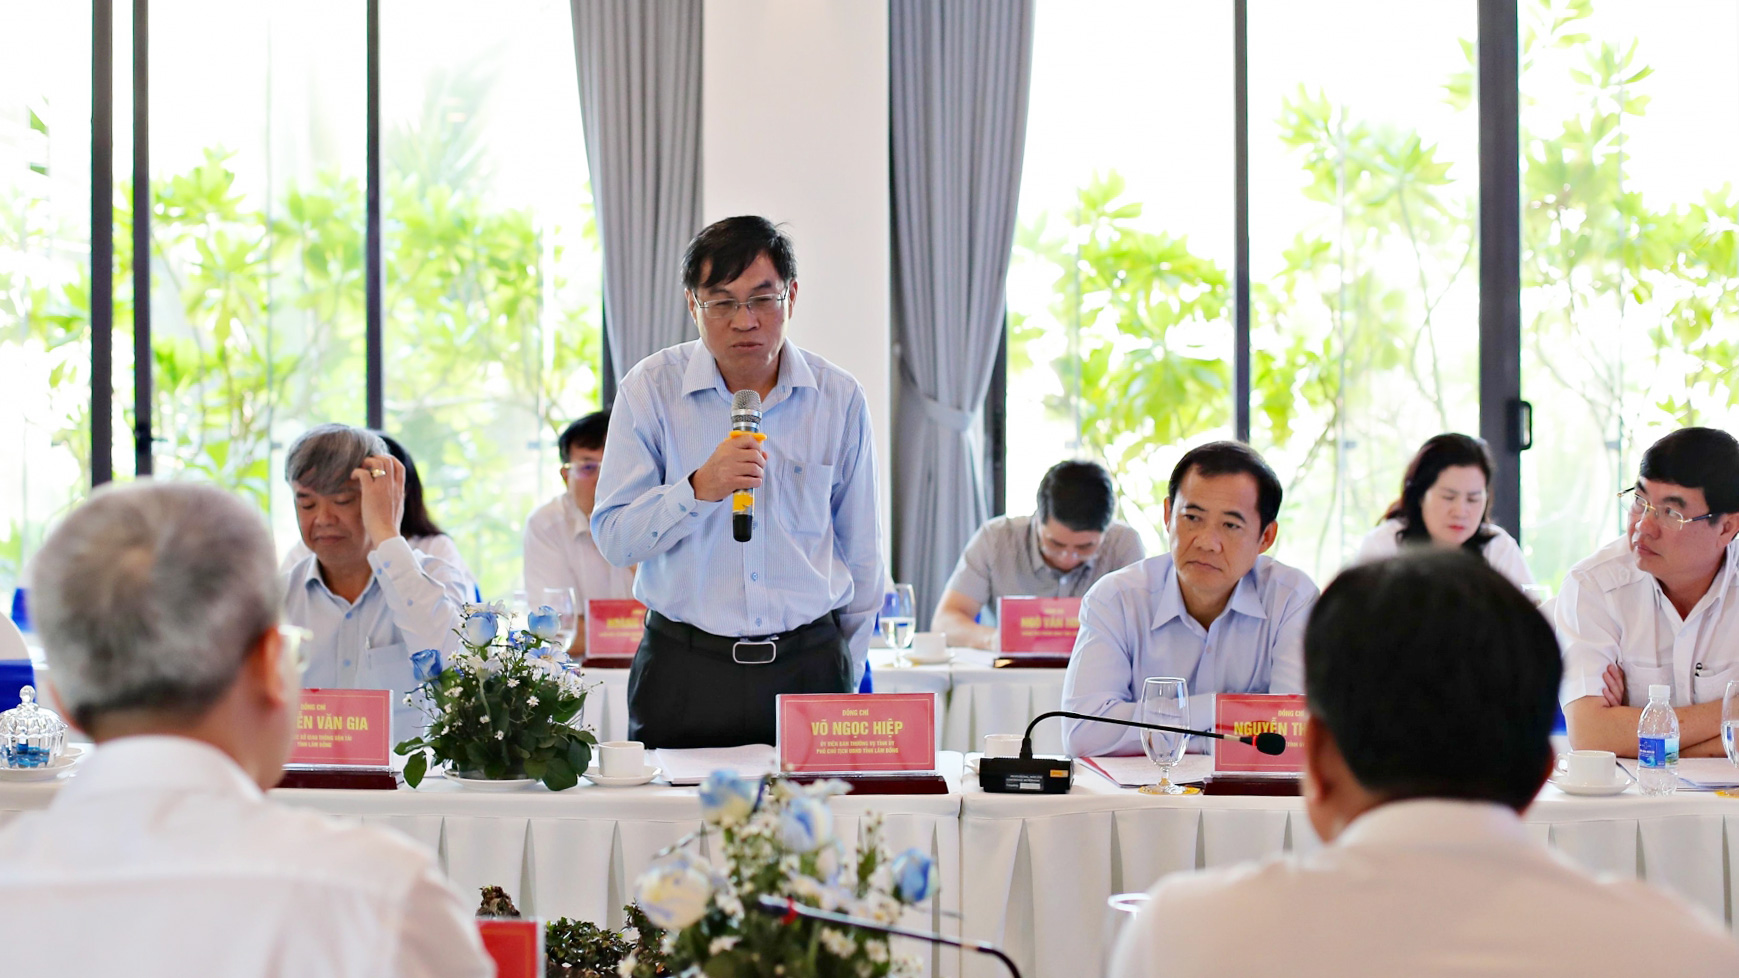 Đồng chí Võ Ngọc HIệp, Phó Chủ tịch UBND tỉnh Lâm Đồng trả lời một số vướng mắc của tập đoàn Đèo Cả